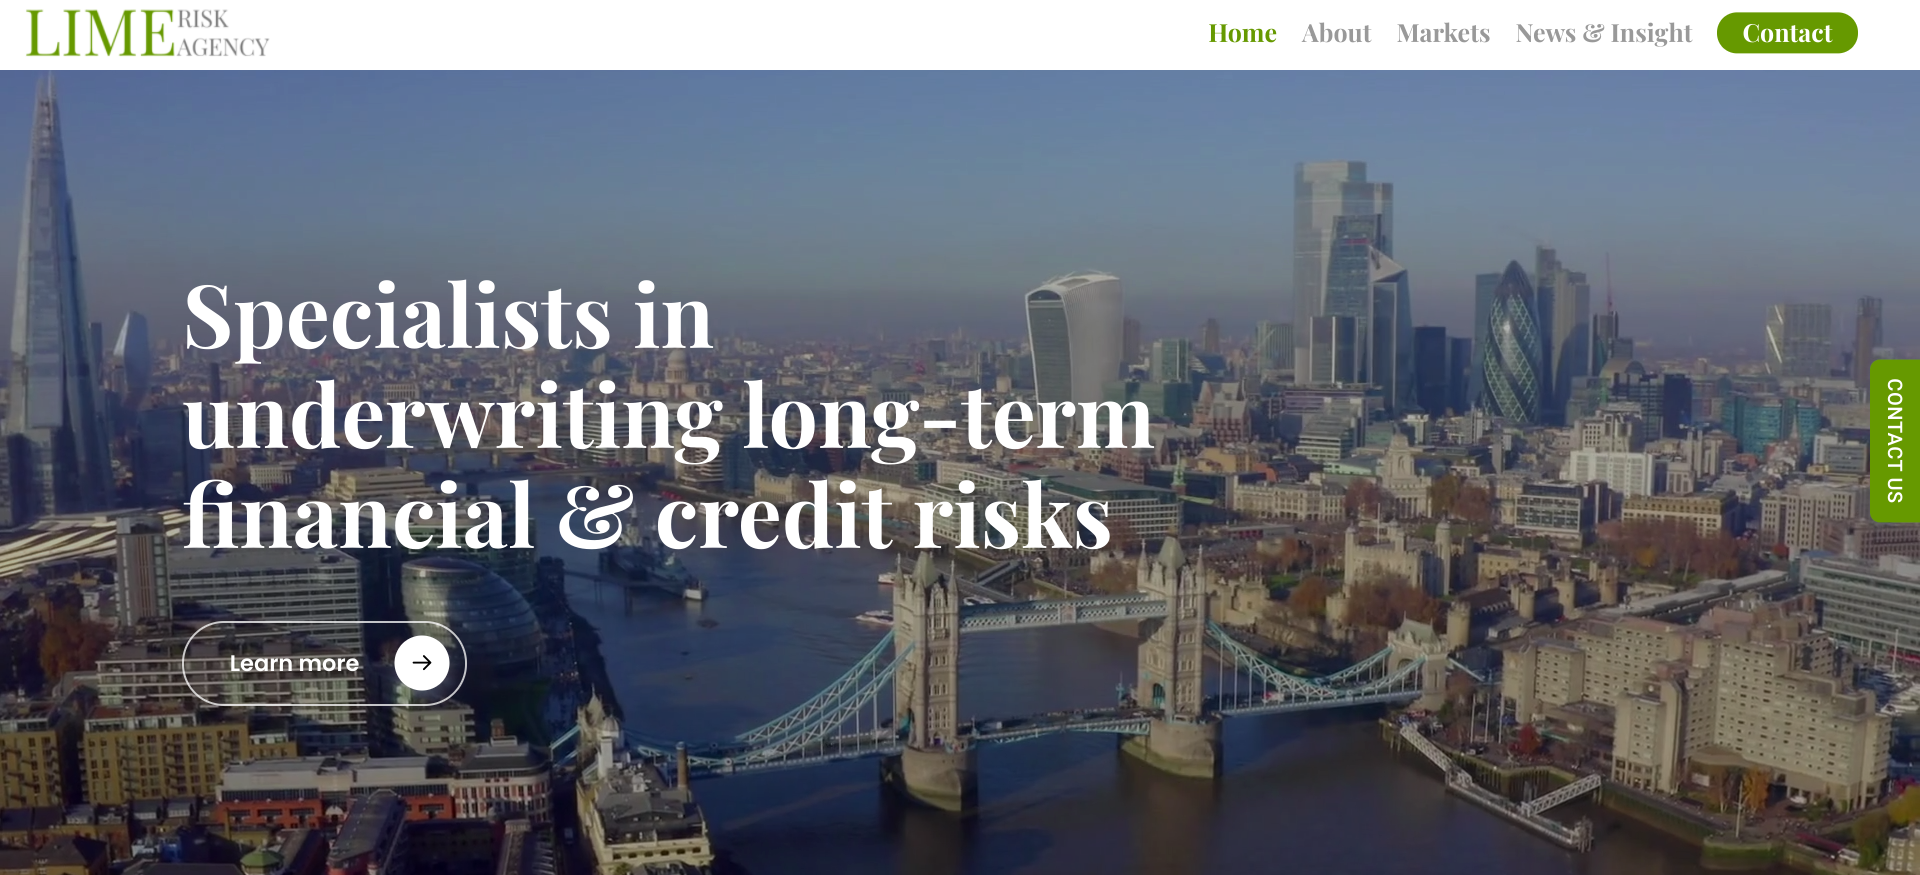 Lime Risk Agency